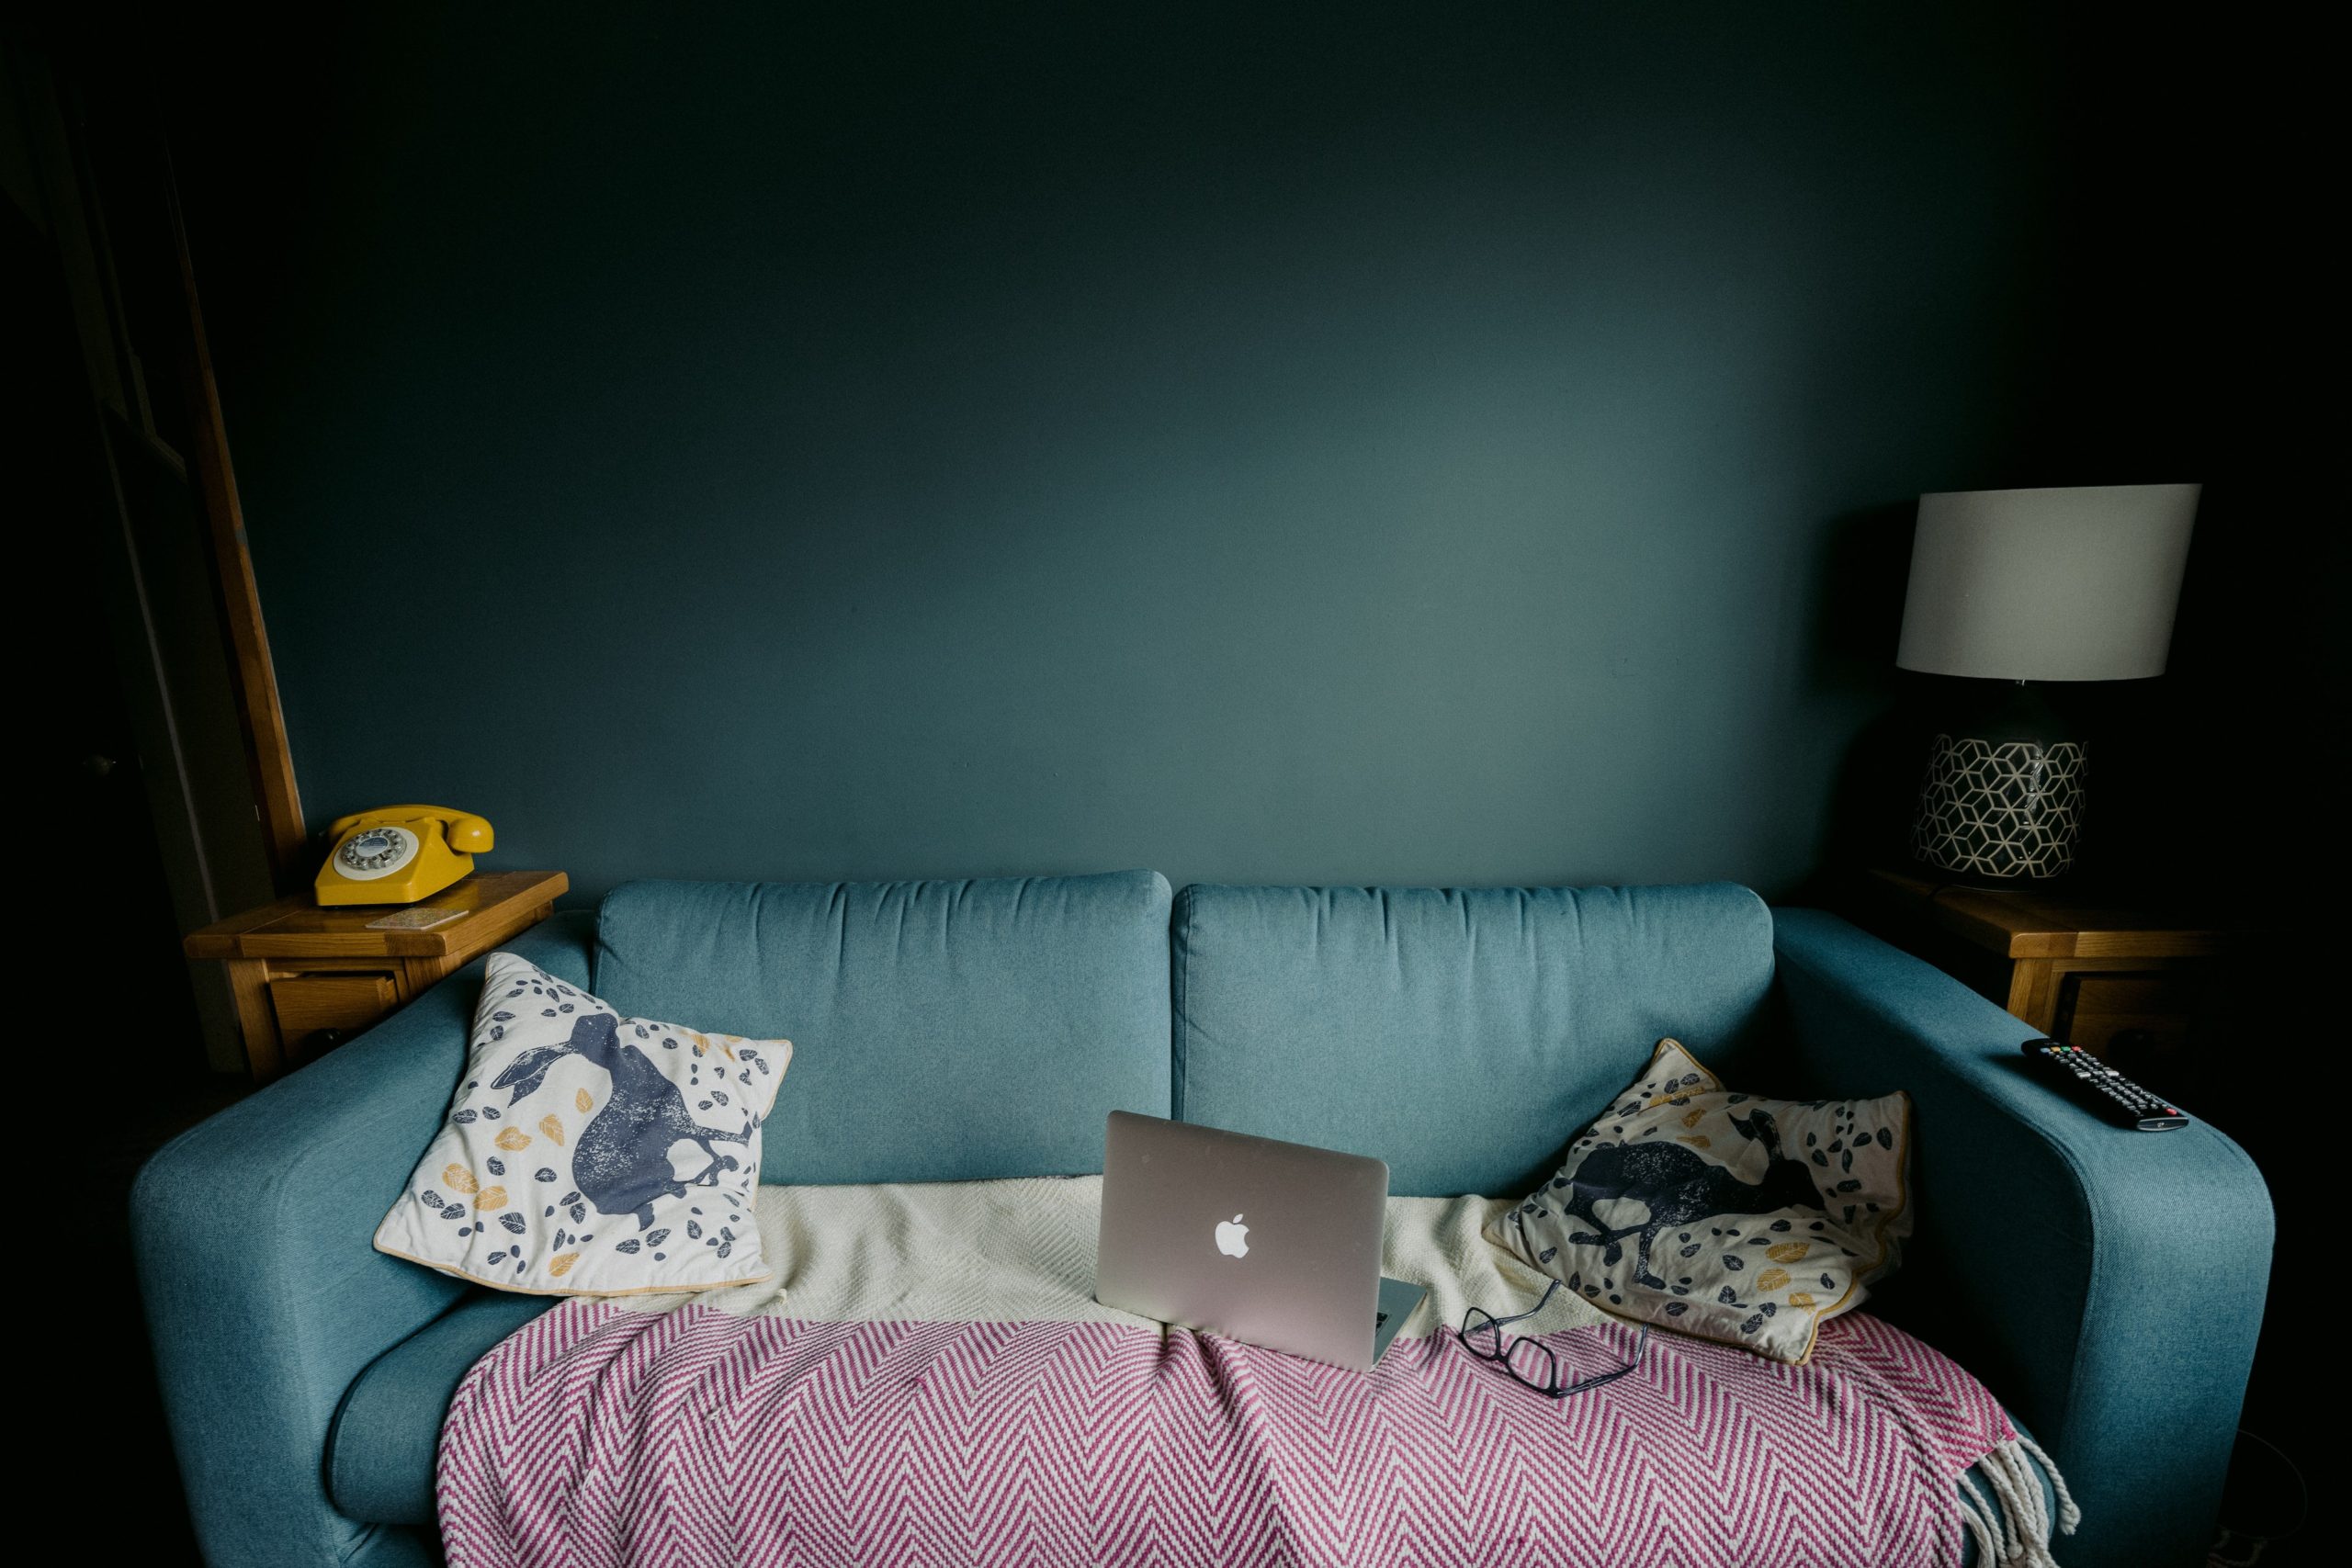 divano verde su parete azzurra con computer e coperta - lavorare da casa senza imbruttirsi